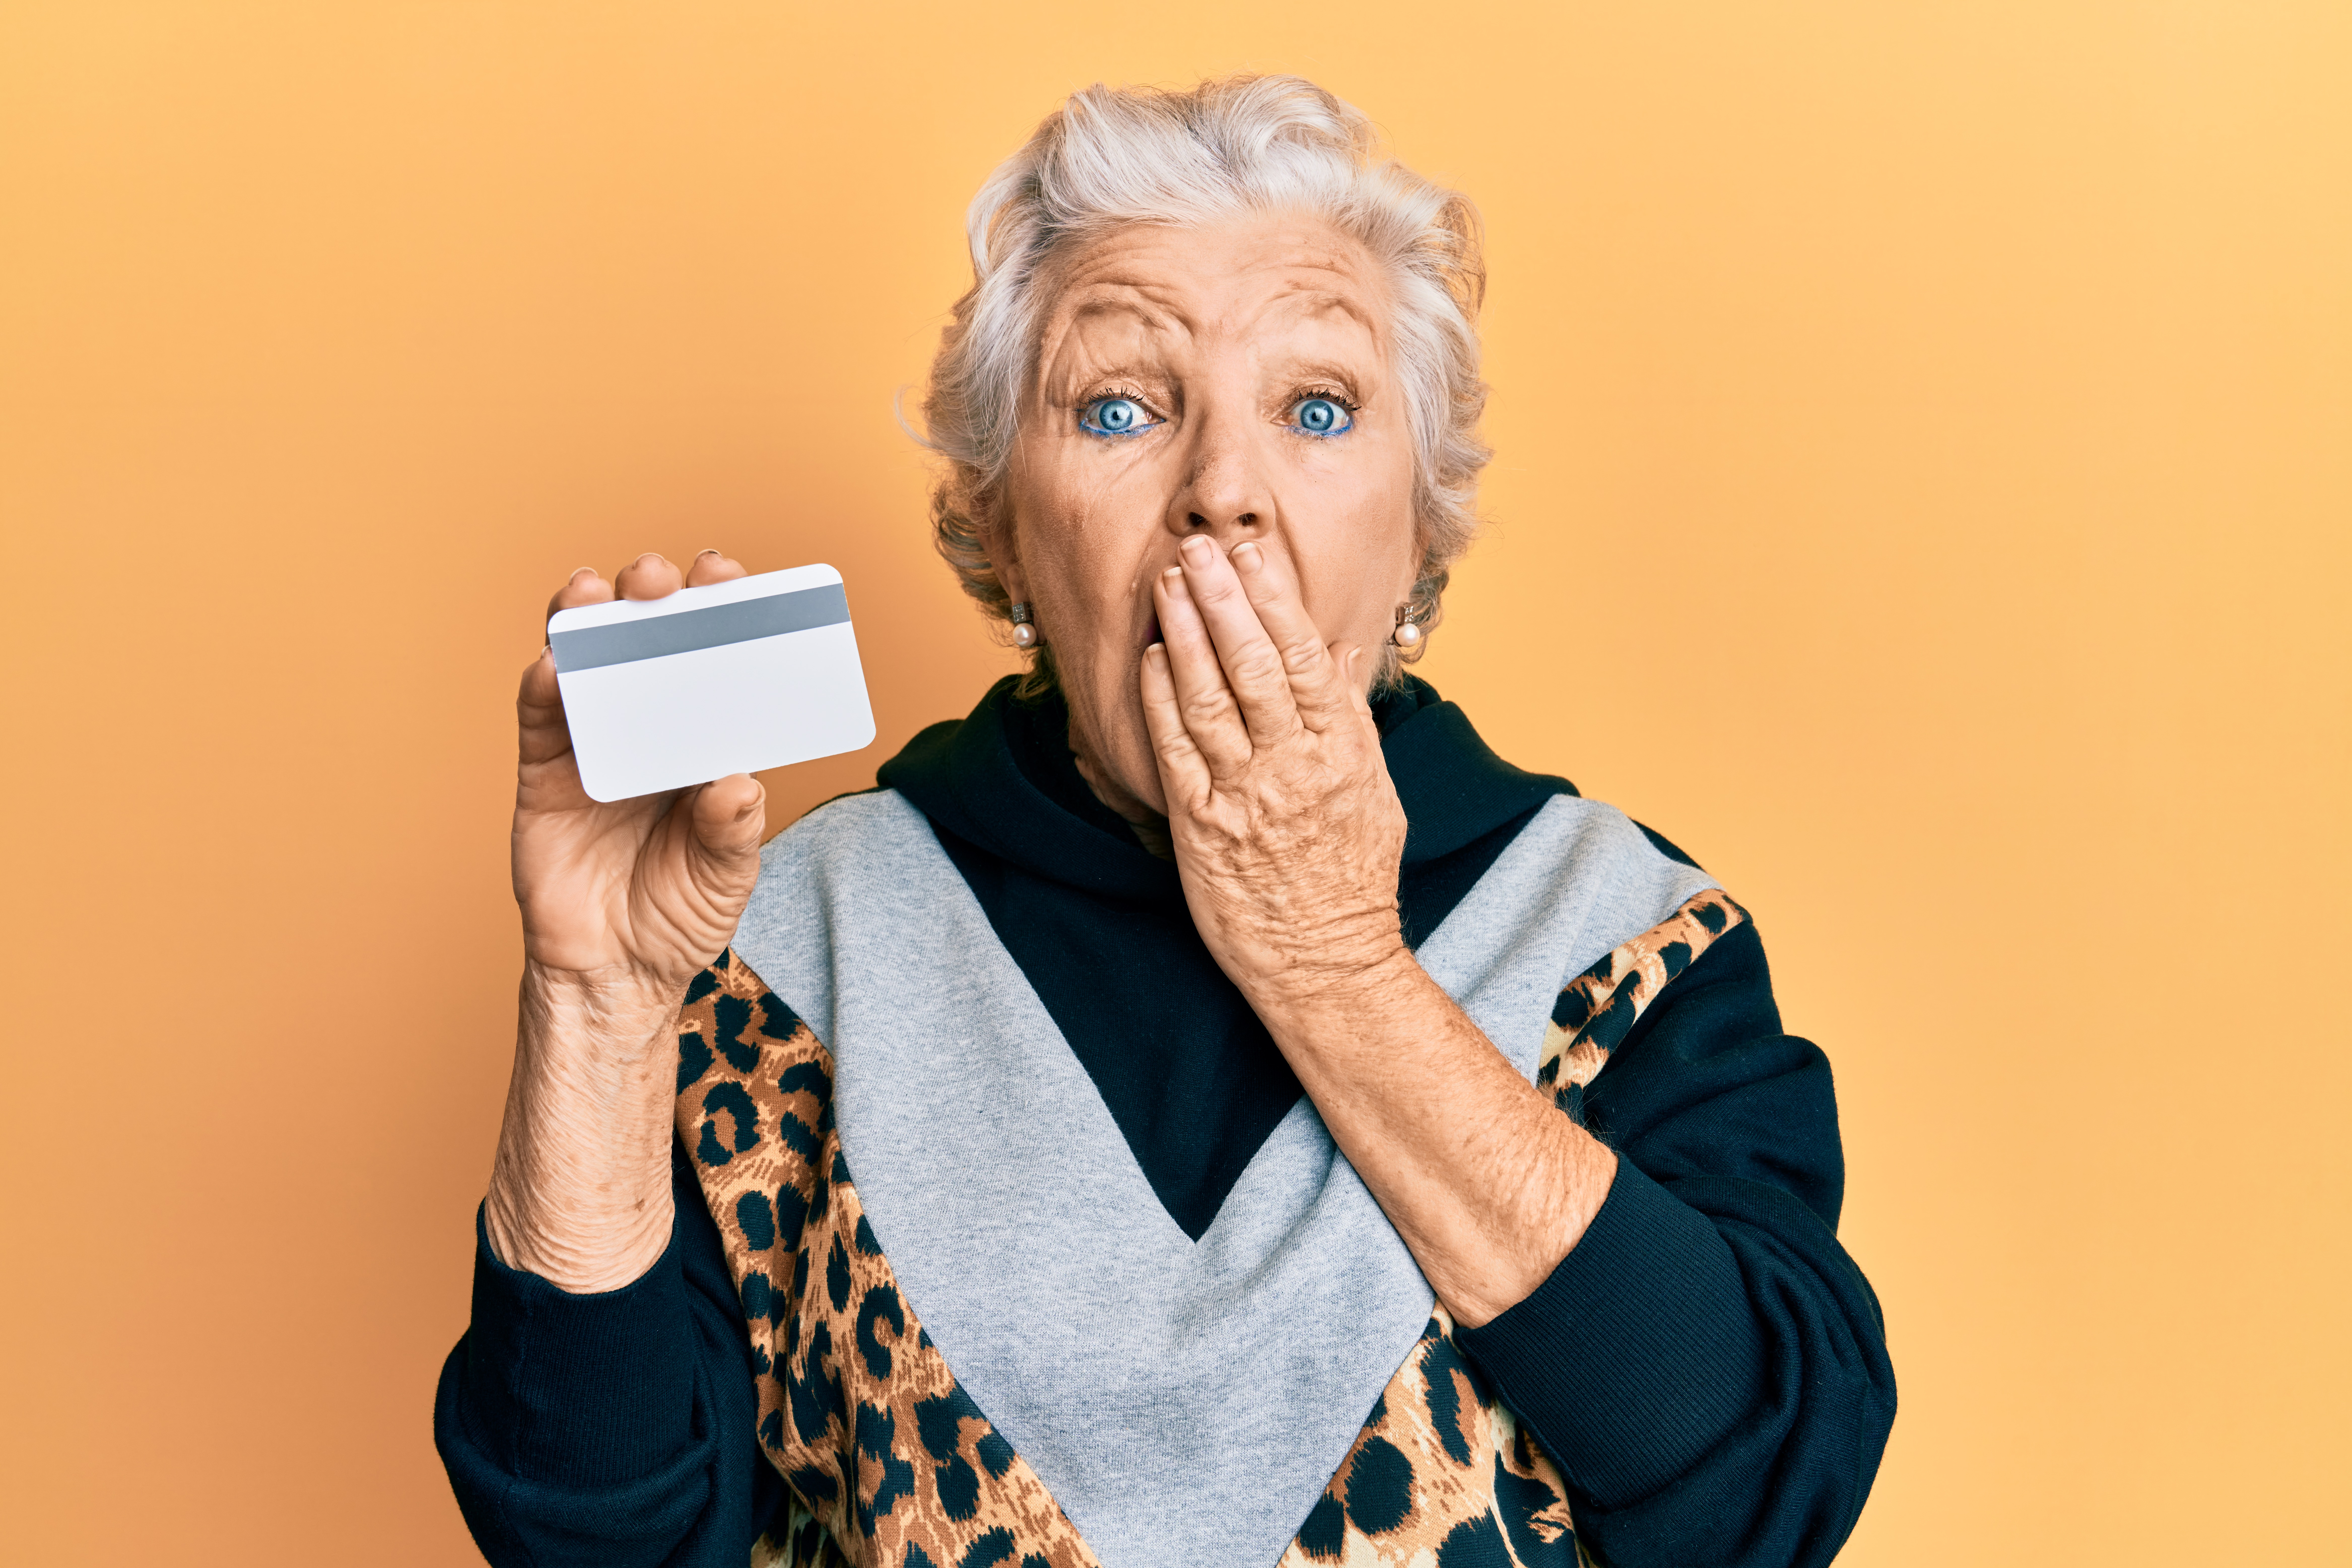 An elderly woman holding a credit card | Source: Shutterstock